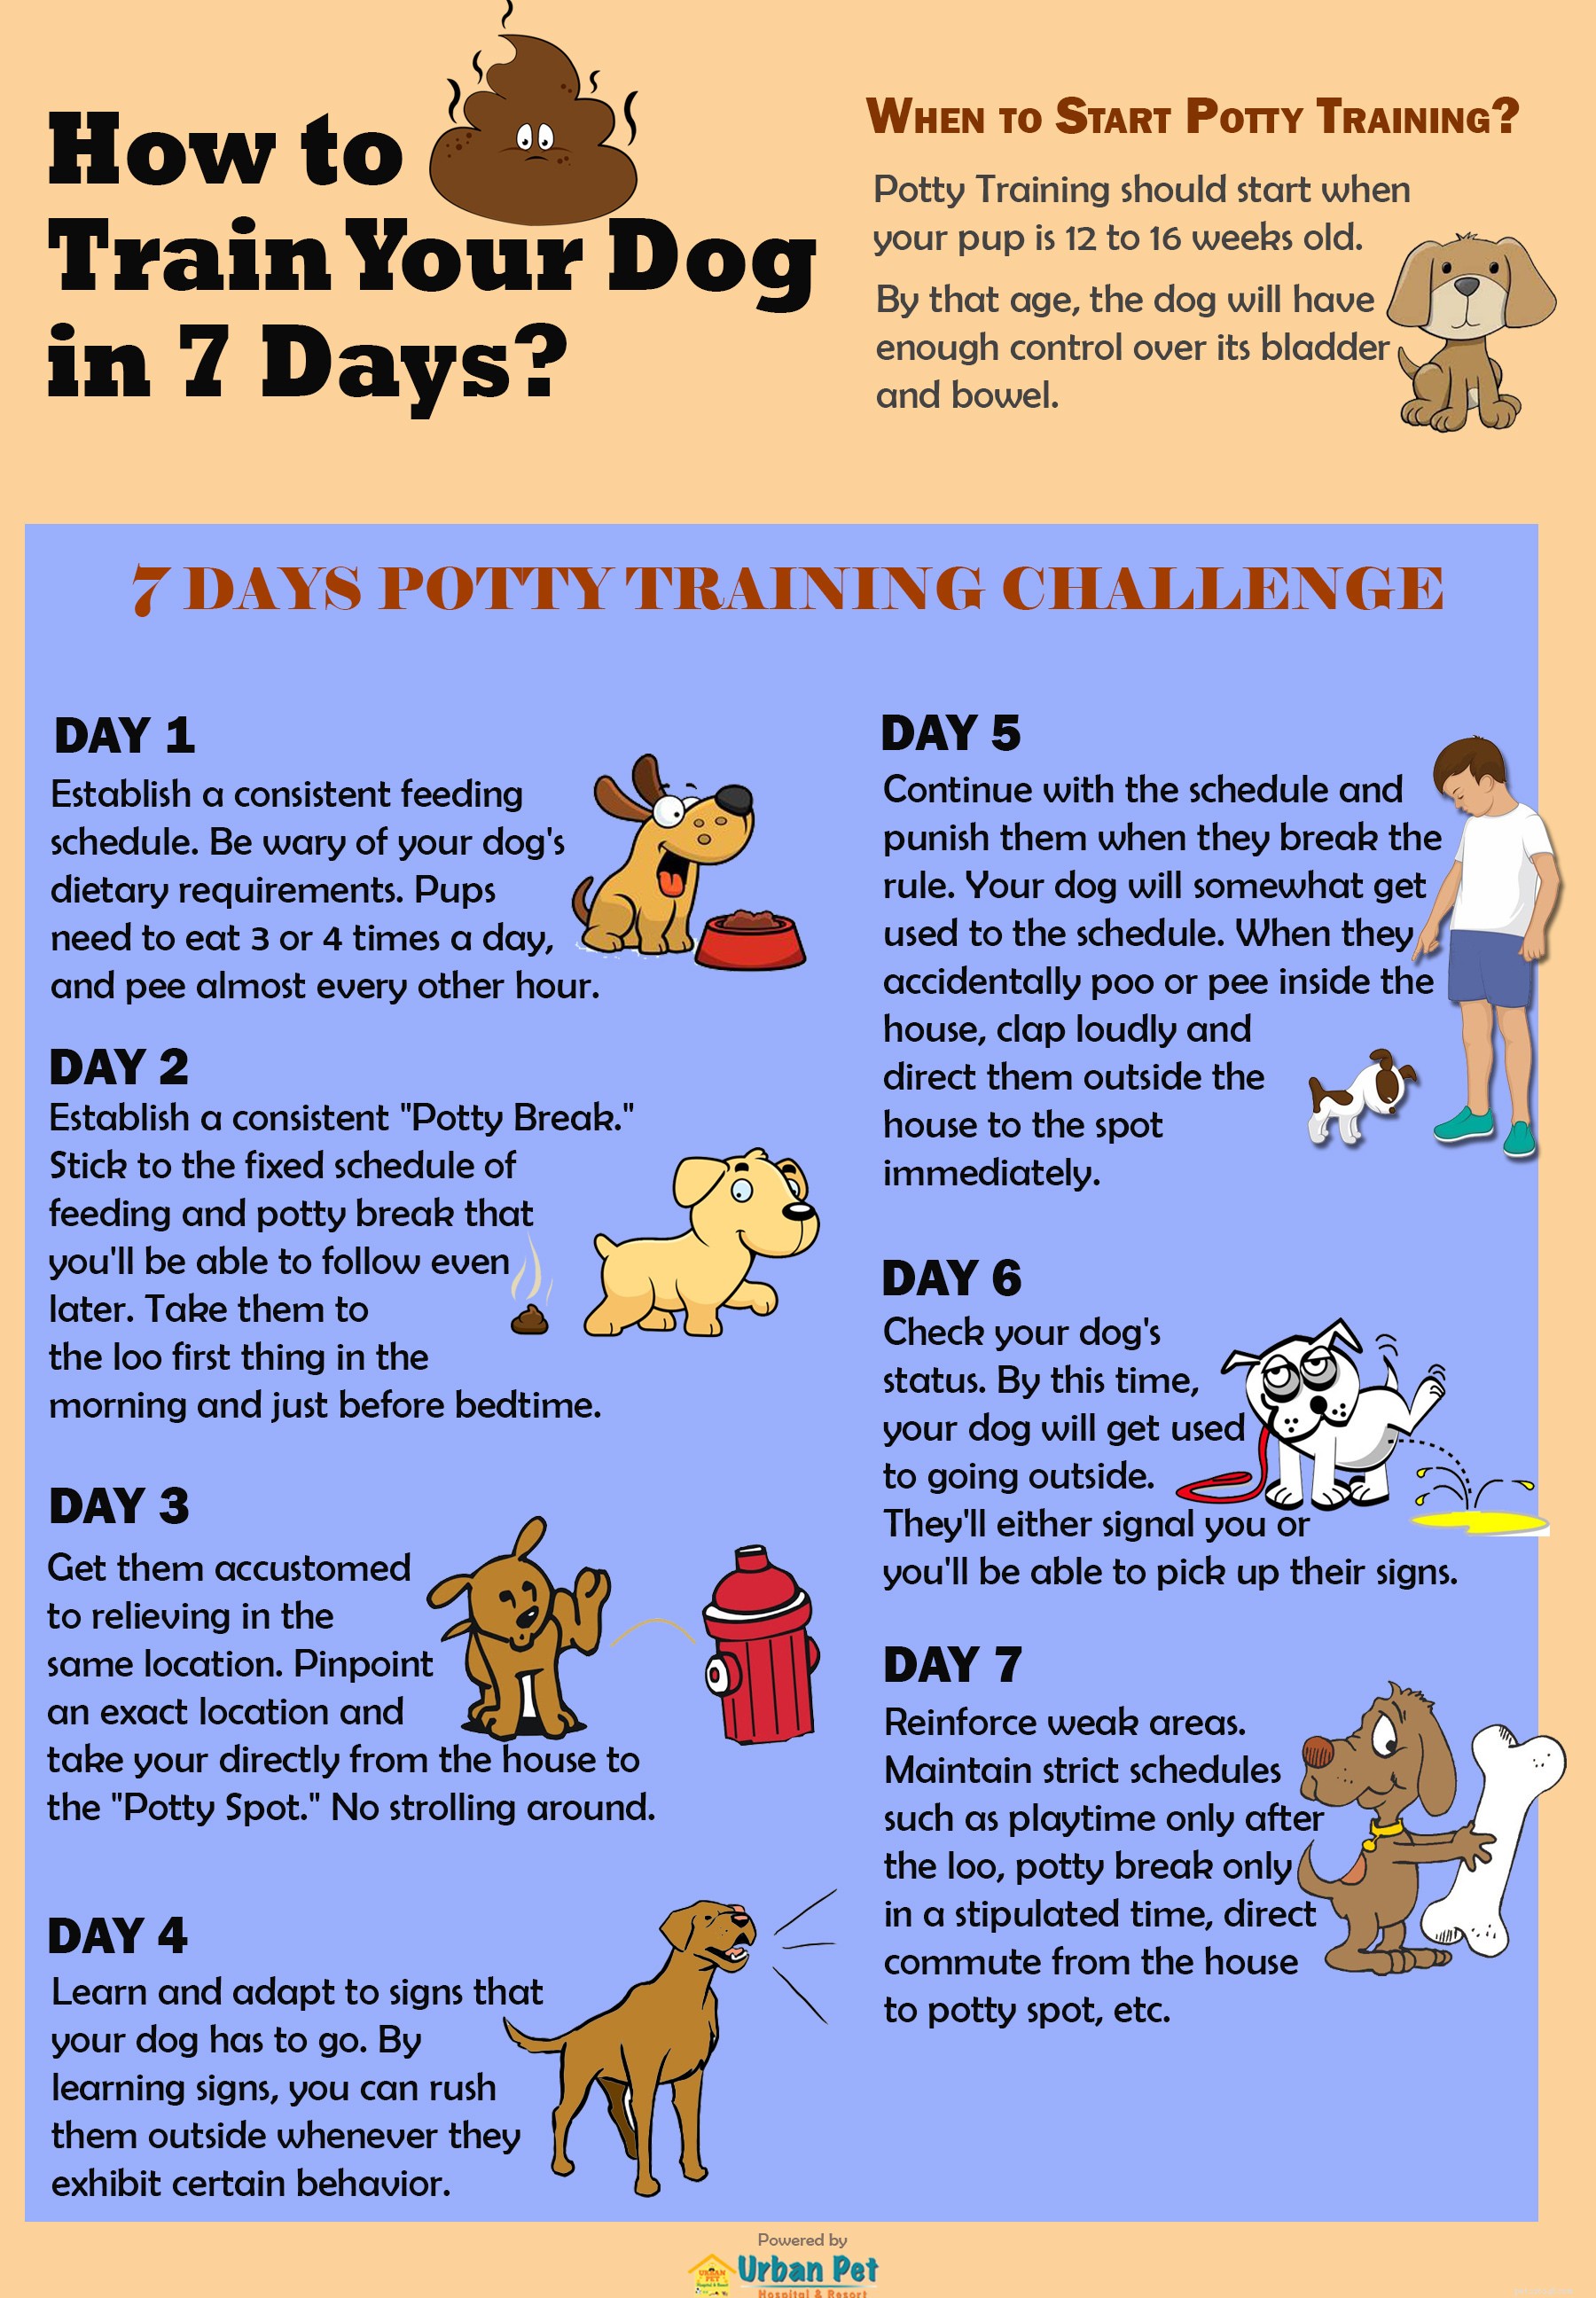 Como posso treinar meu cachorro em apenas 7 dias?